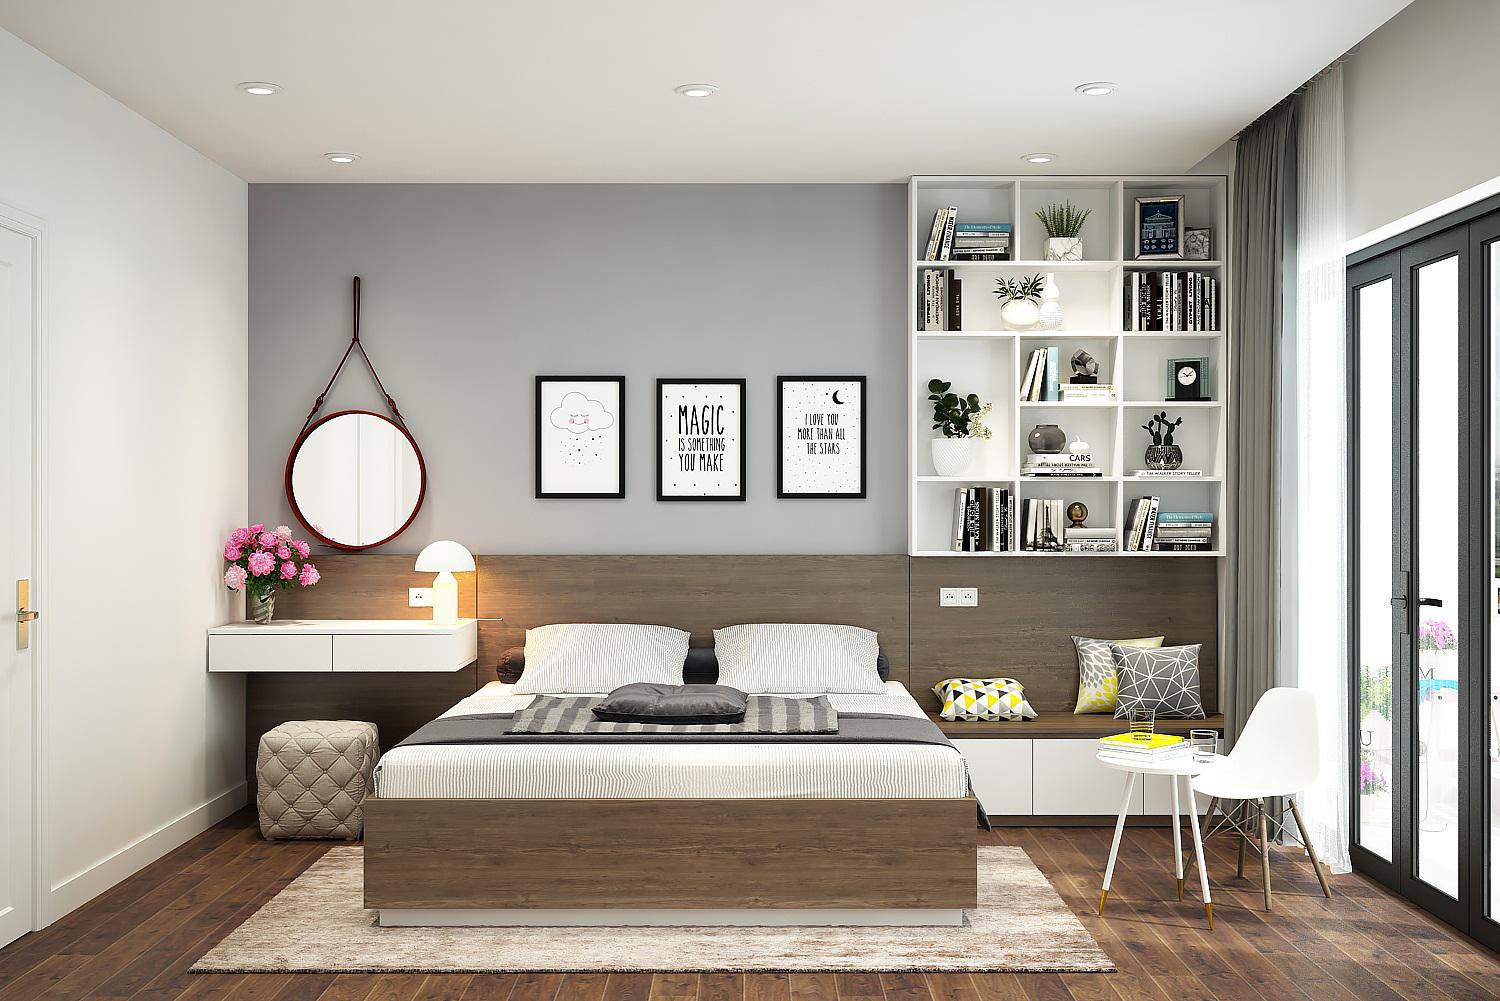 Bạn đang muốn tự thiết kế không gian phòng ngủ nhỏ của mình? Với thiết kế nội thất phòng ngủ 15m2 đơn giản, bạn sẽ có được không gian sống tích hợp nhiều chức năng, đồng thời tối ưu hóa không gian nhỏ của mình. Những ý tưởng thiết kế mới nhất sẽ giúp bạn tạo ra một không gian sống sinh động, độc đáo và tiện nghi.